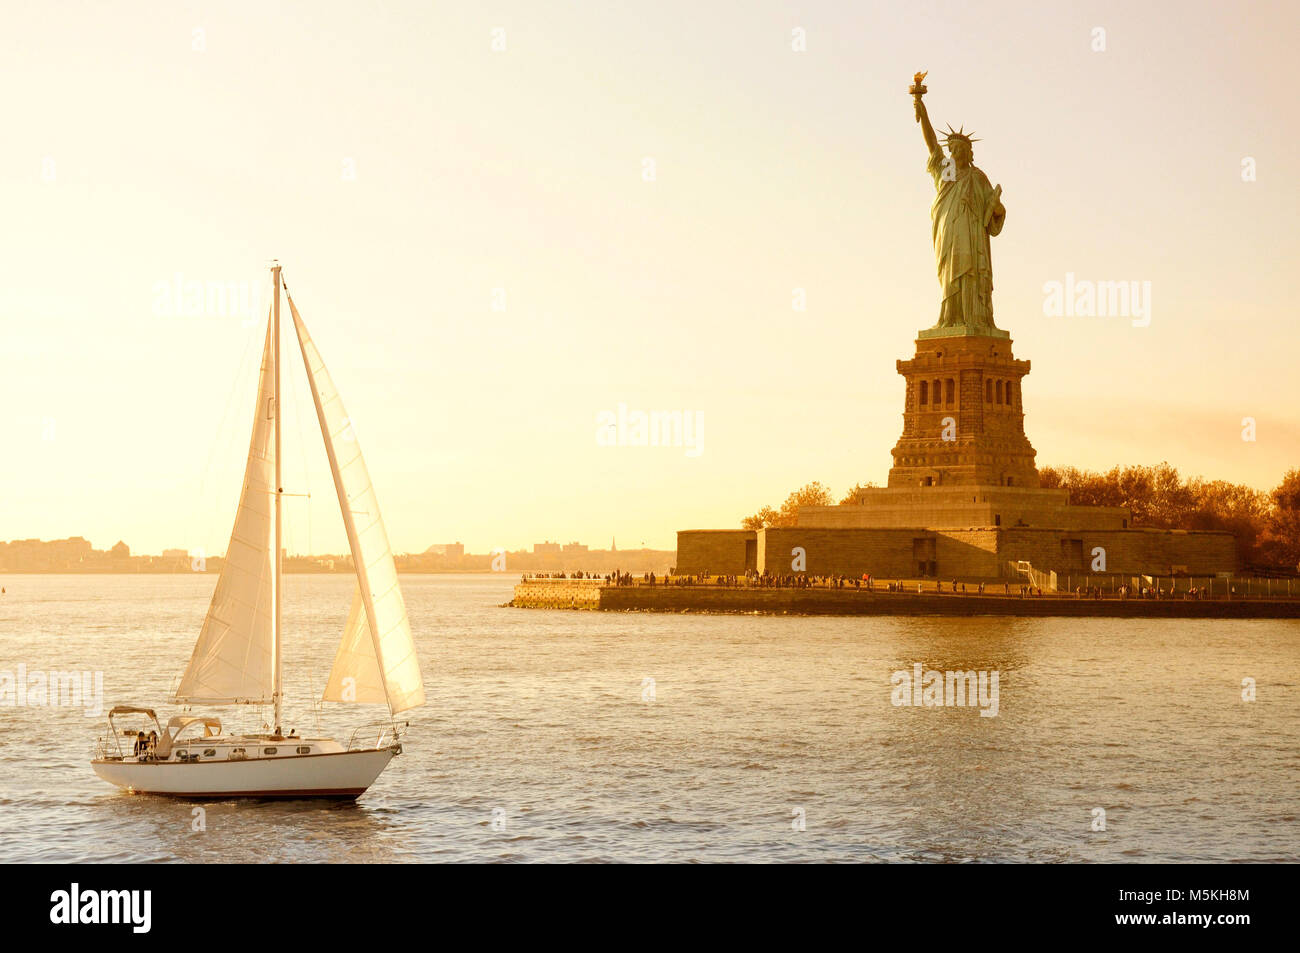 Statue of Liberty and yacht, New York City, NY, USA Stock Photo